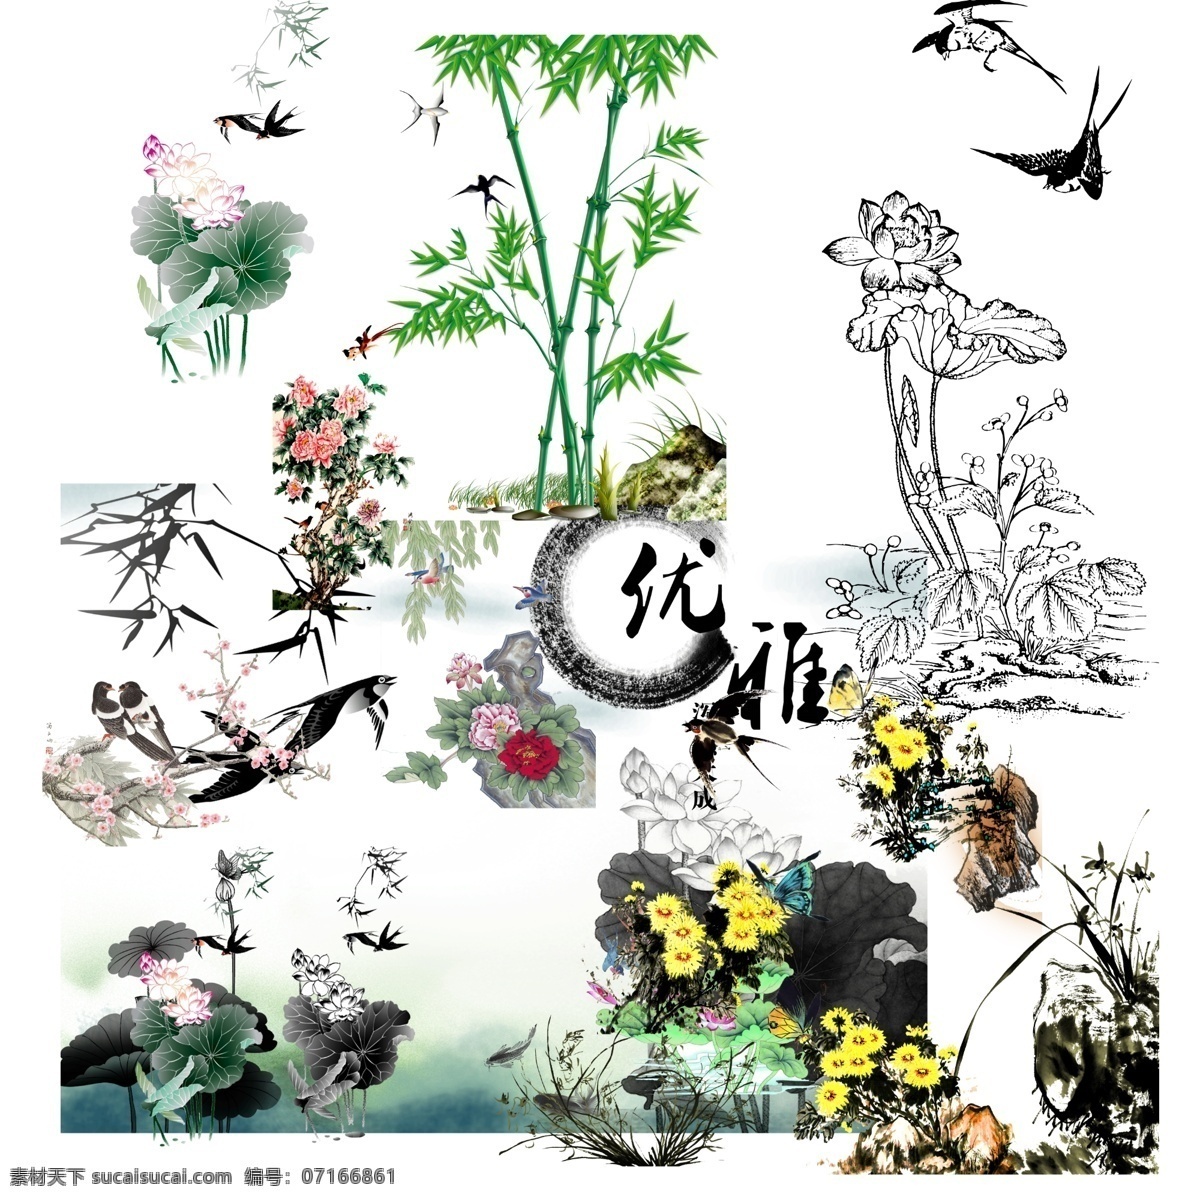 燕子 飞翔 花朵 插画 元素 春季元素 动物 花朵元素 设计素材 设计元素 手绘燕子 燕子插画 燕子素材